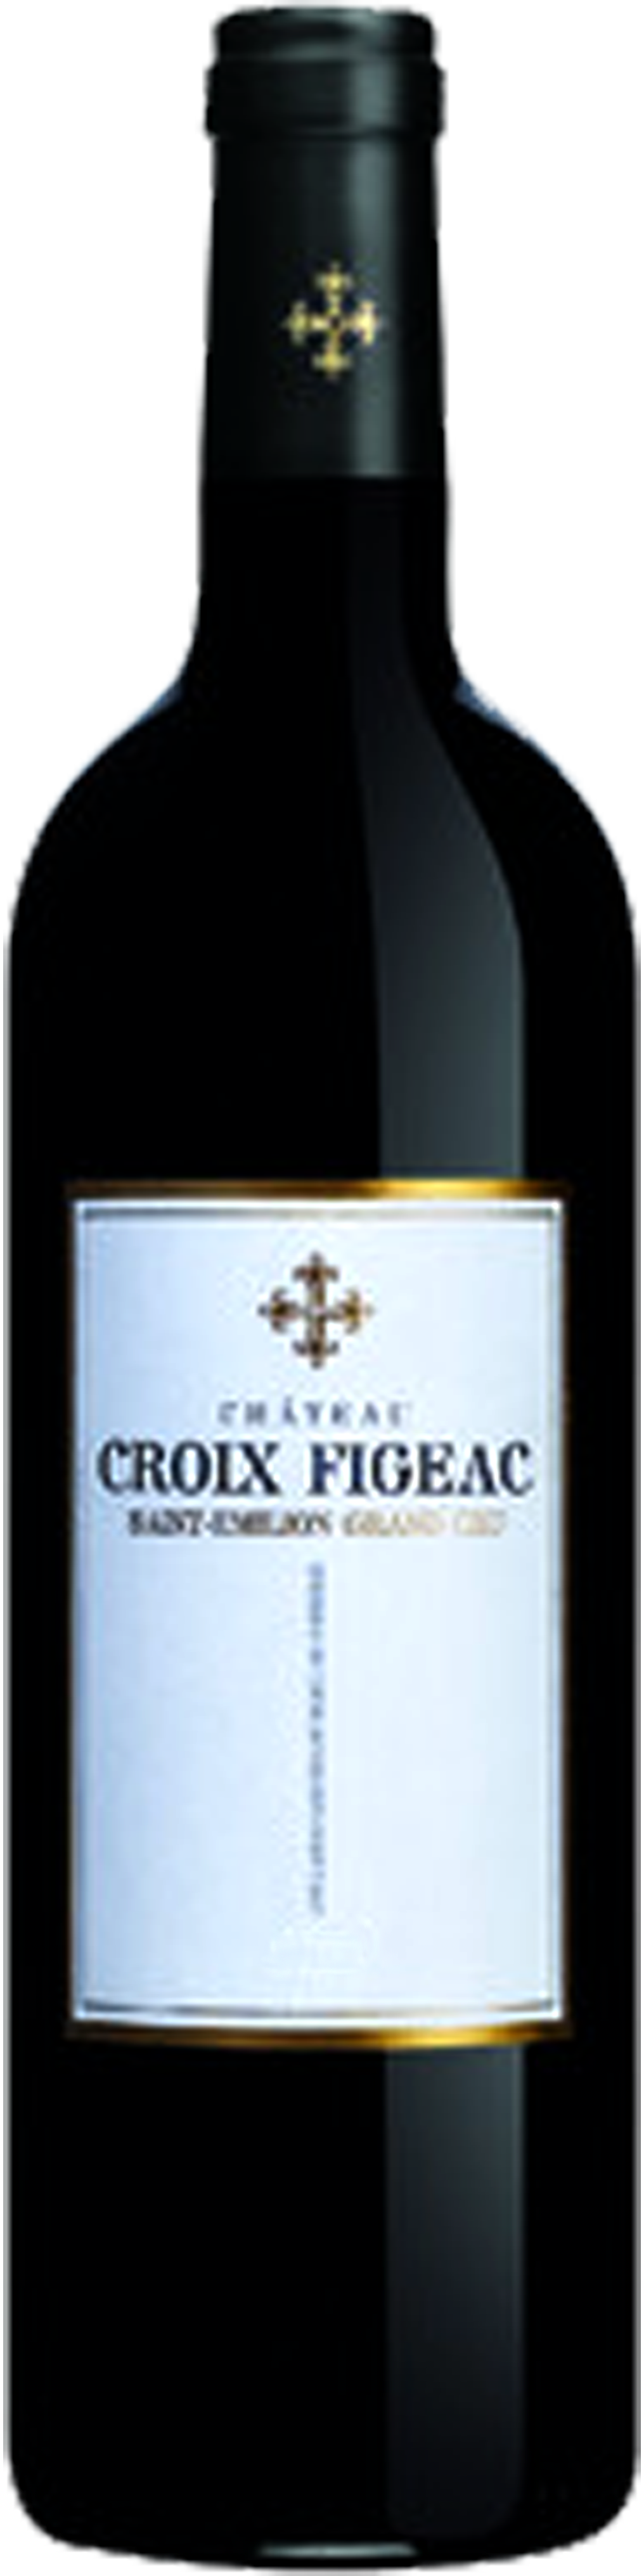 Image of product Château La Croix Figeac, St Emilion Grand Cru